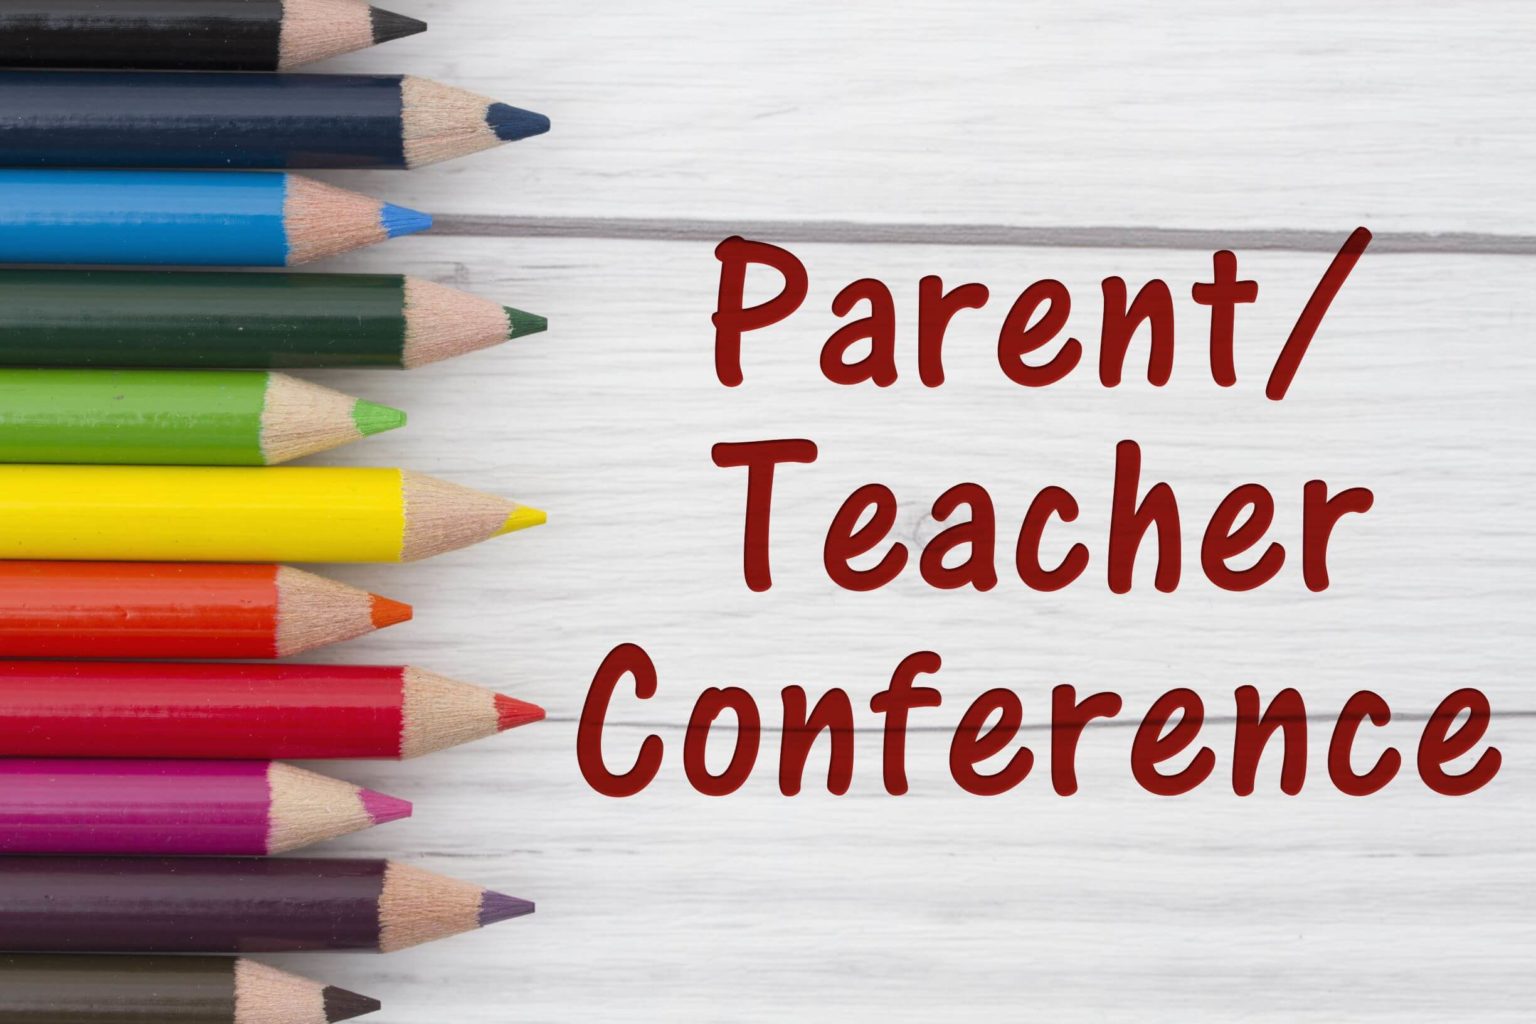 Parent Teacher Conferences at WGH!